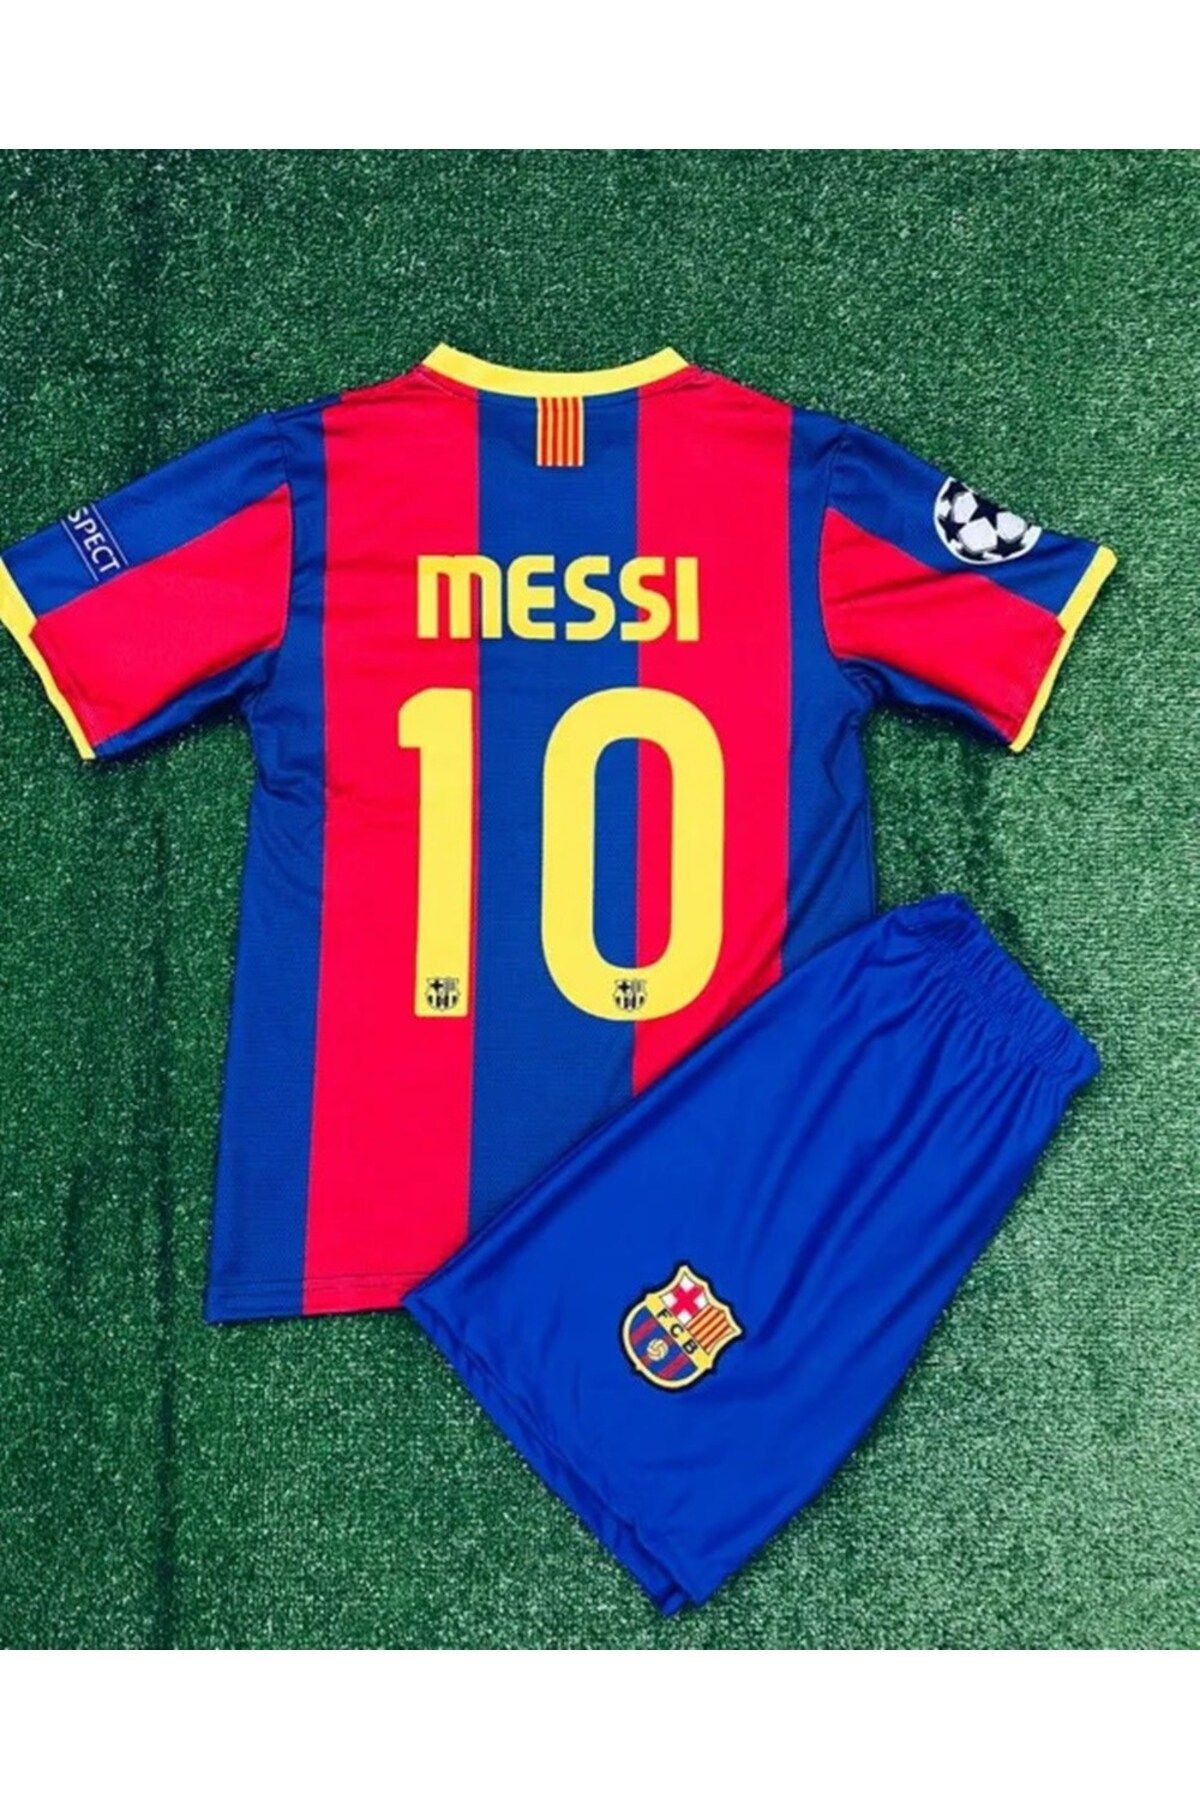 xeox Barcelona Messi Erkek Çocuk Forması Takımı 4 Lü Set